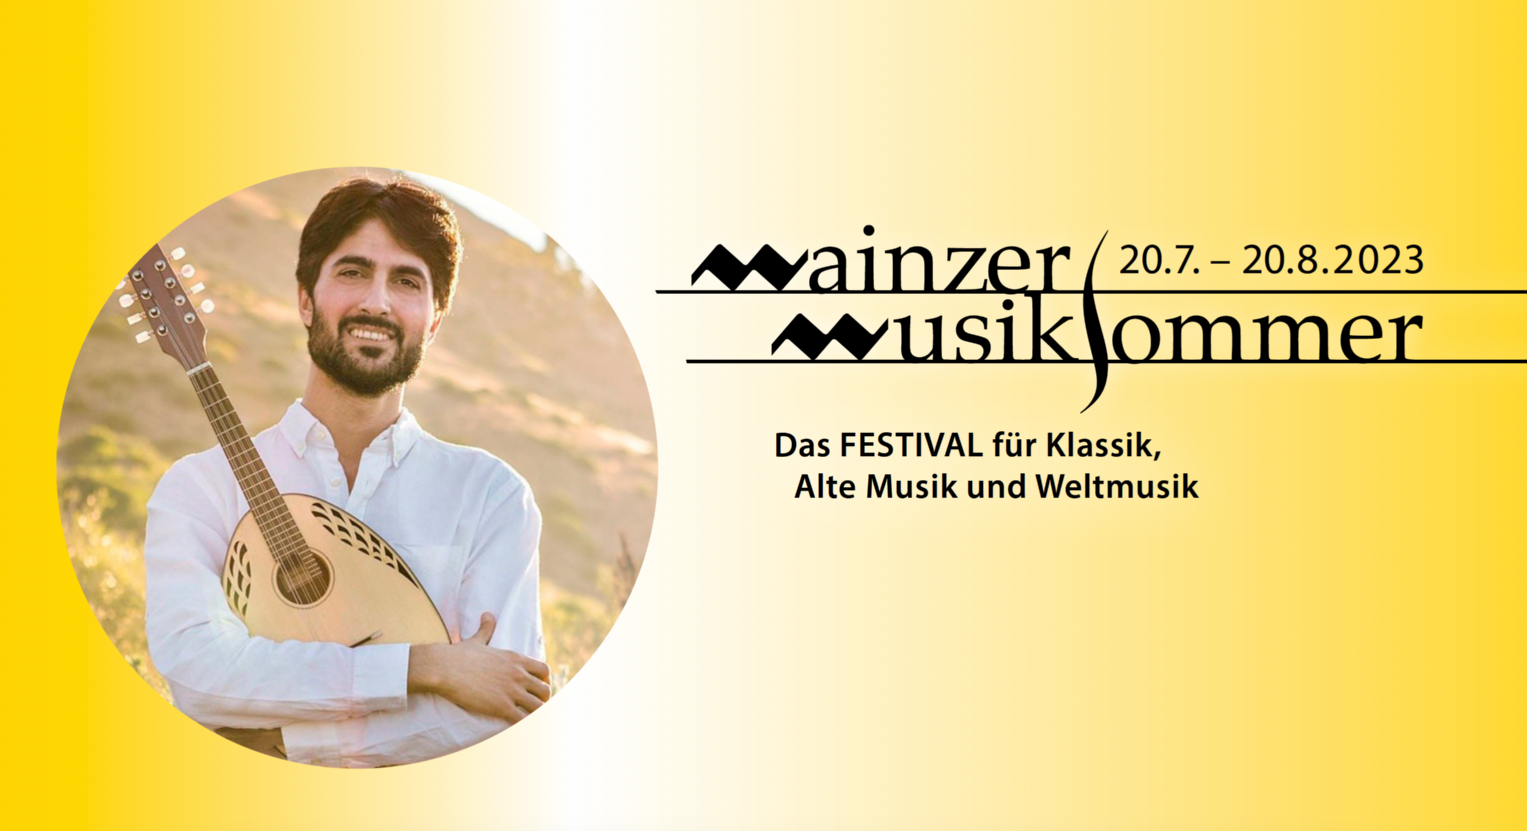 musiksommer (c) Klassik Agentur/ Mainzer Musiksommer